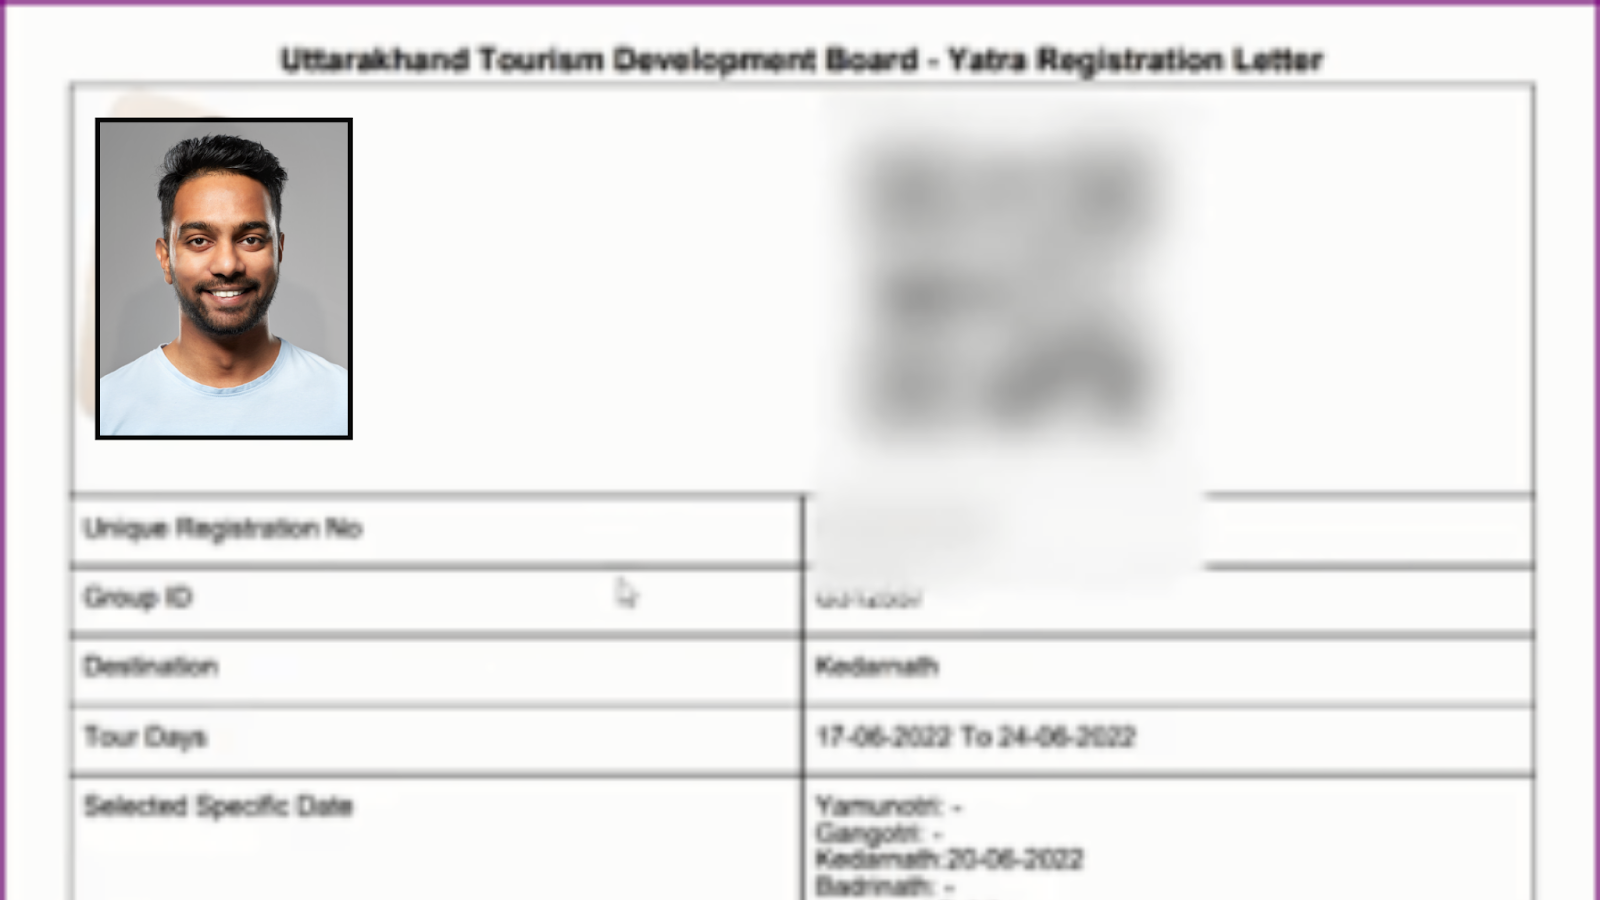 Kedarnath Registration Process